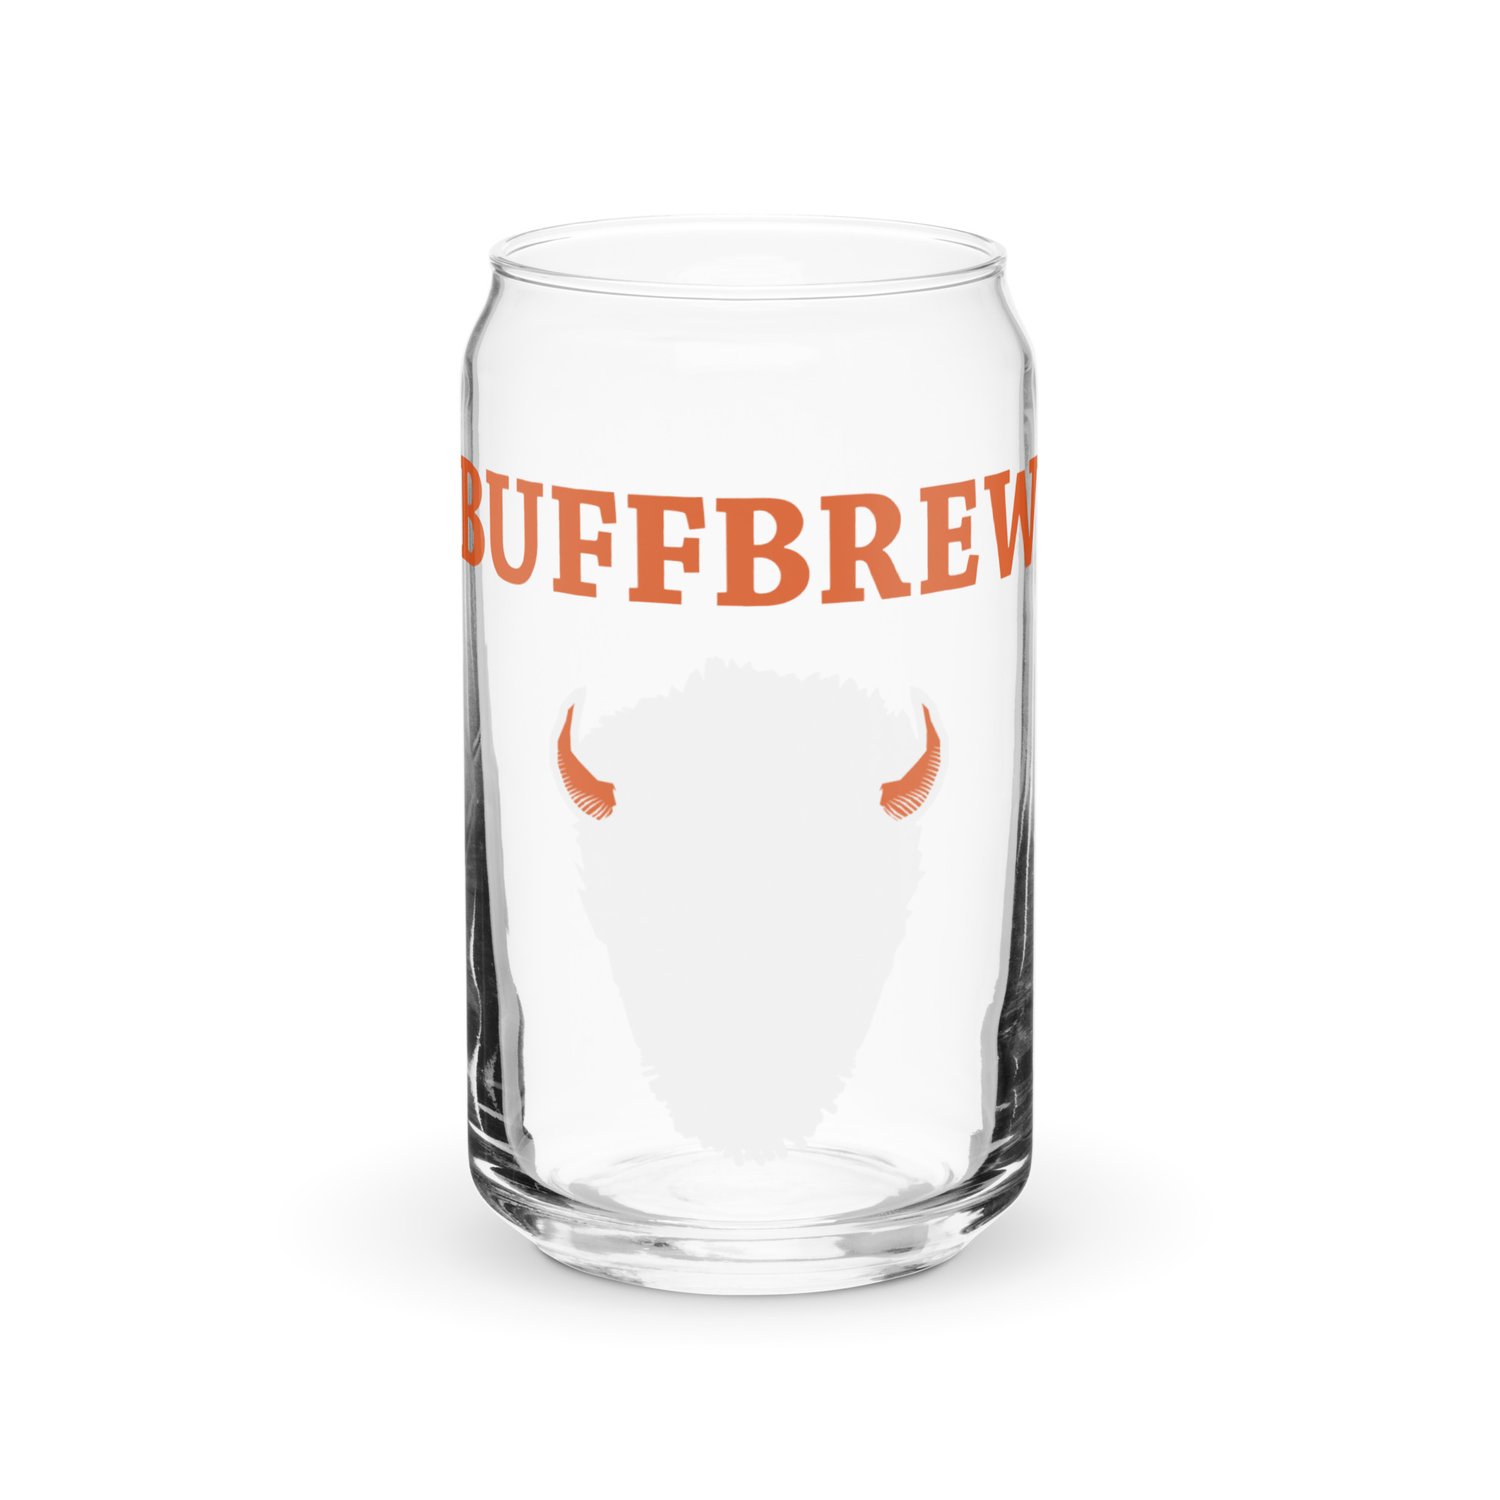 BuffBrew Logo - Can-shaped glass — Buffalo Bayou Brewing Co.